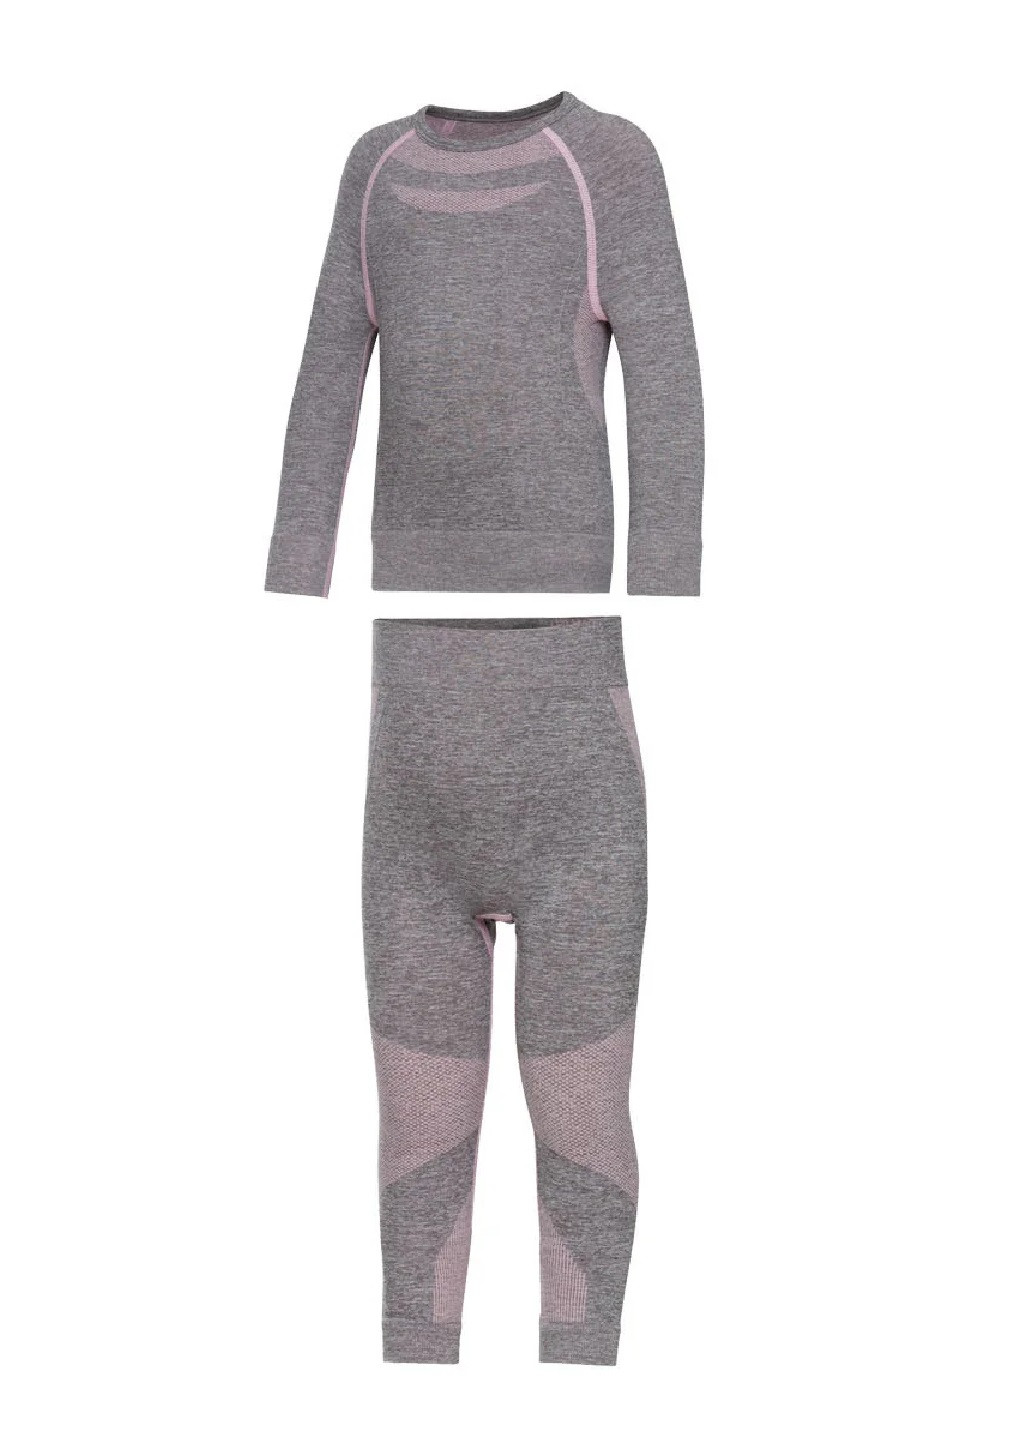 Термокостюм Lupilu свитер + брюки однотонный серый повседневный